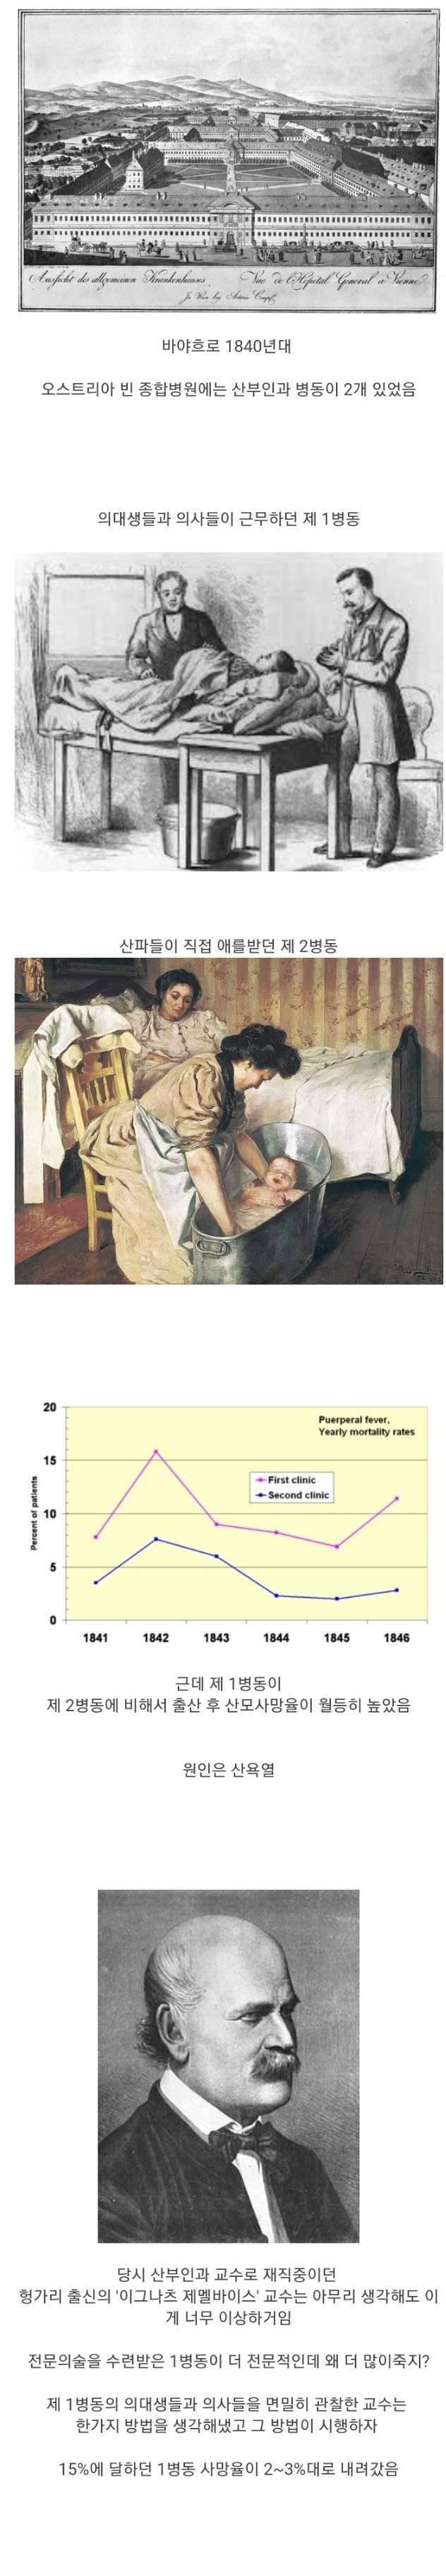 1840년대 임산부 사망률을 낮춘 사람의 최후 | 인스티즈